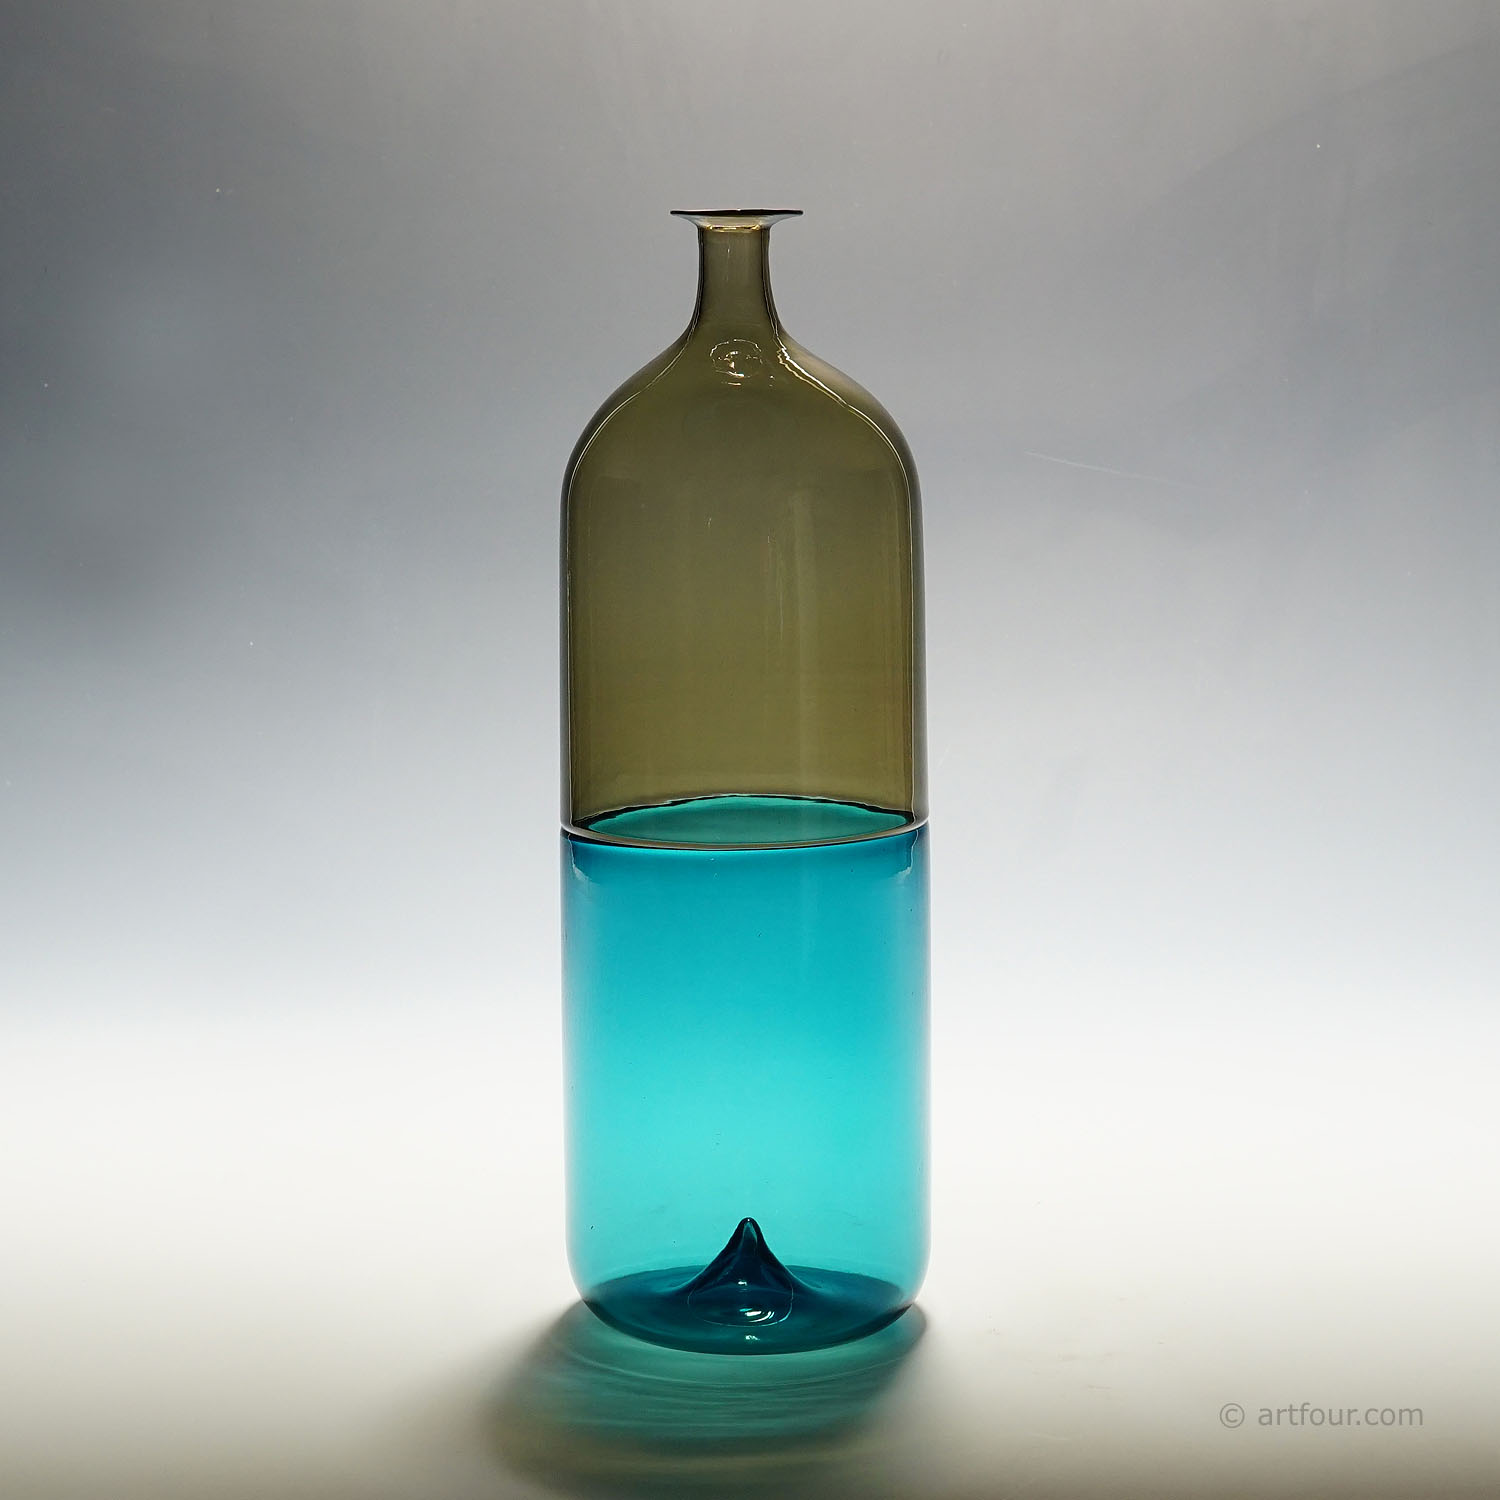 Venini Art Glass Vase 'Bolle ' by Tapio Wirkkala for Venini, Murano 1966